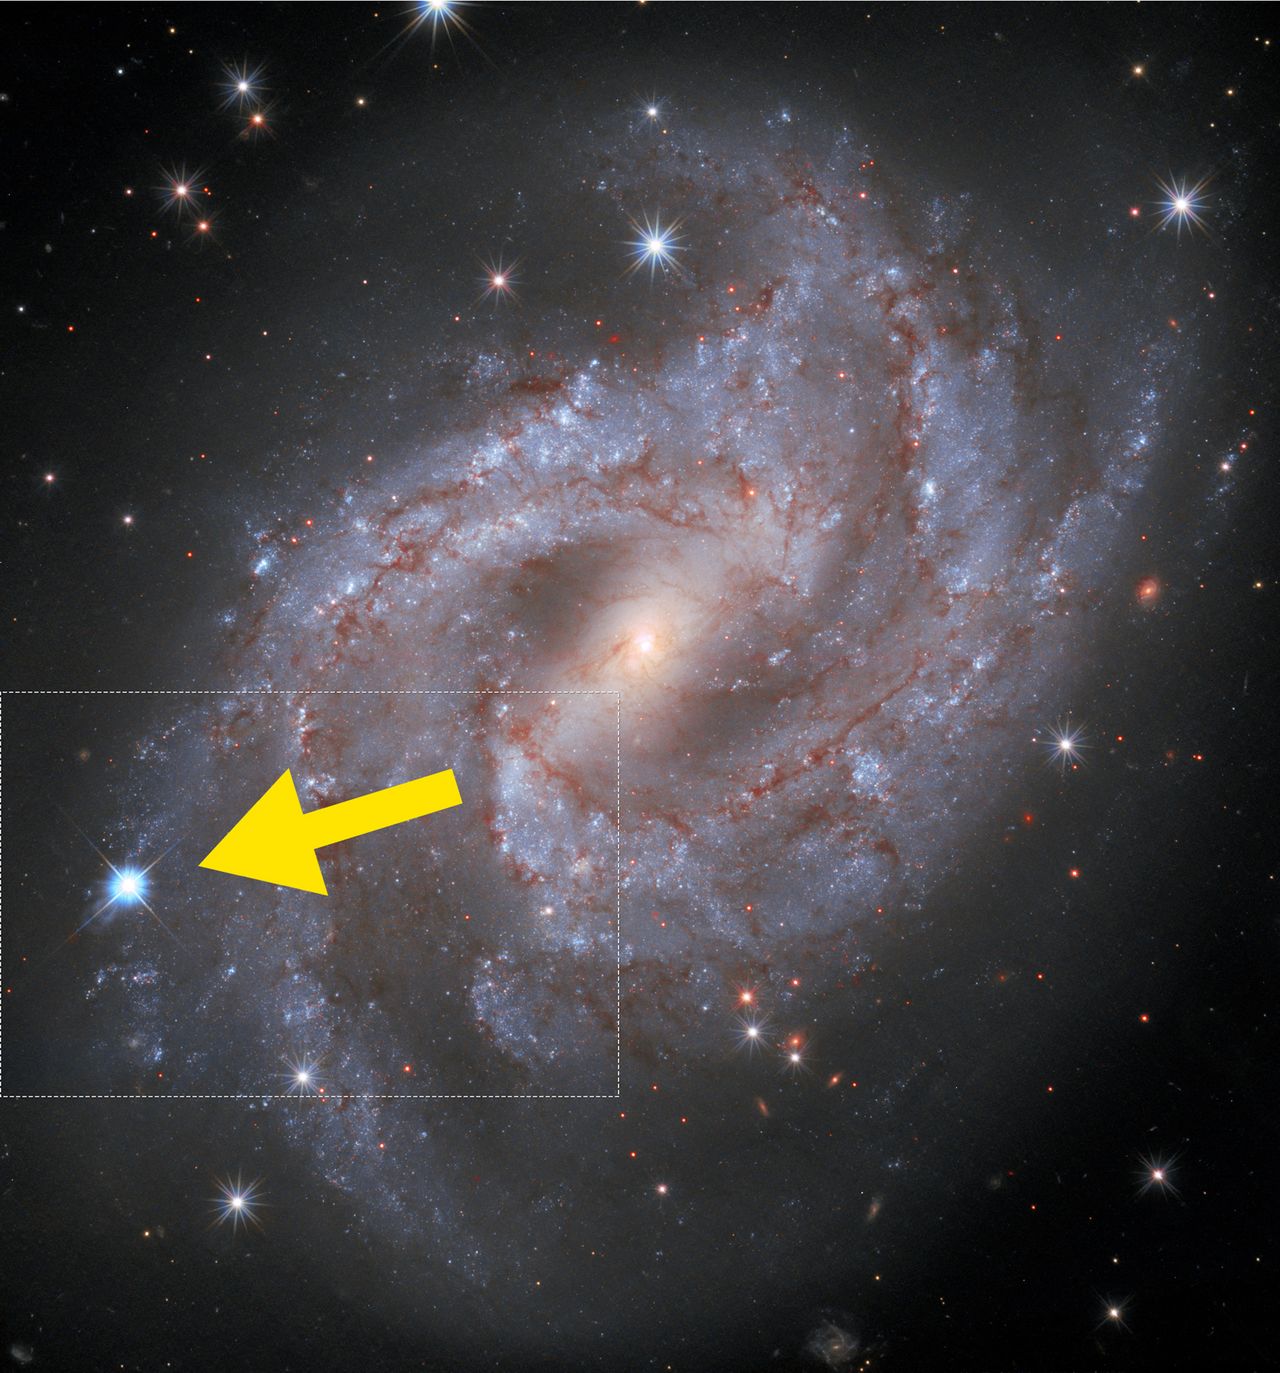 Teleskop Hubble’a ujął supernową jaśniejszą niż wszystkie gwiazdy w galaktyce